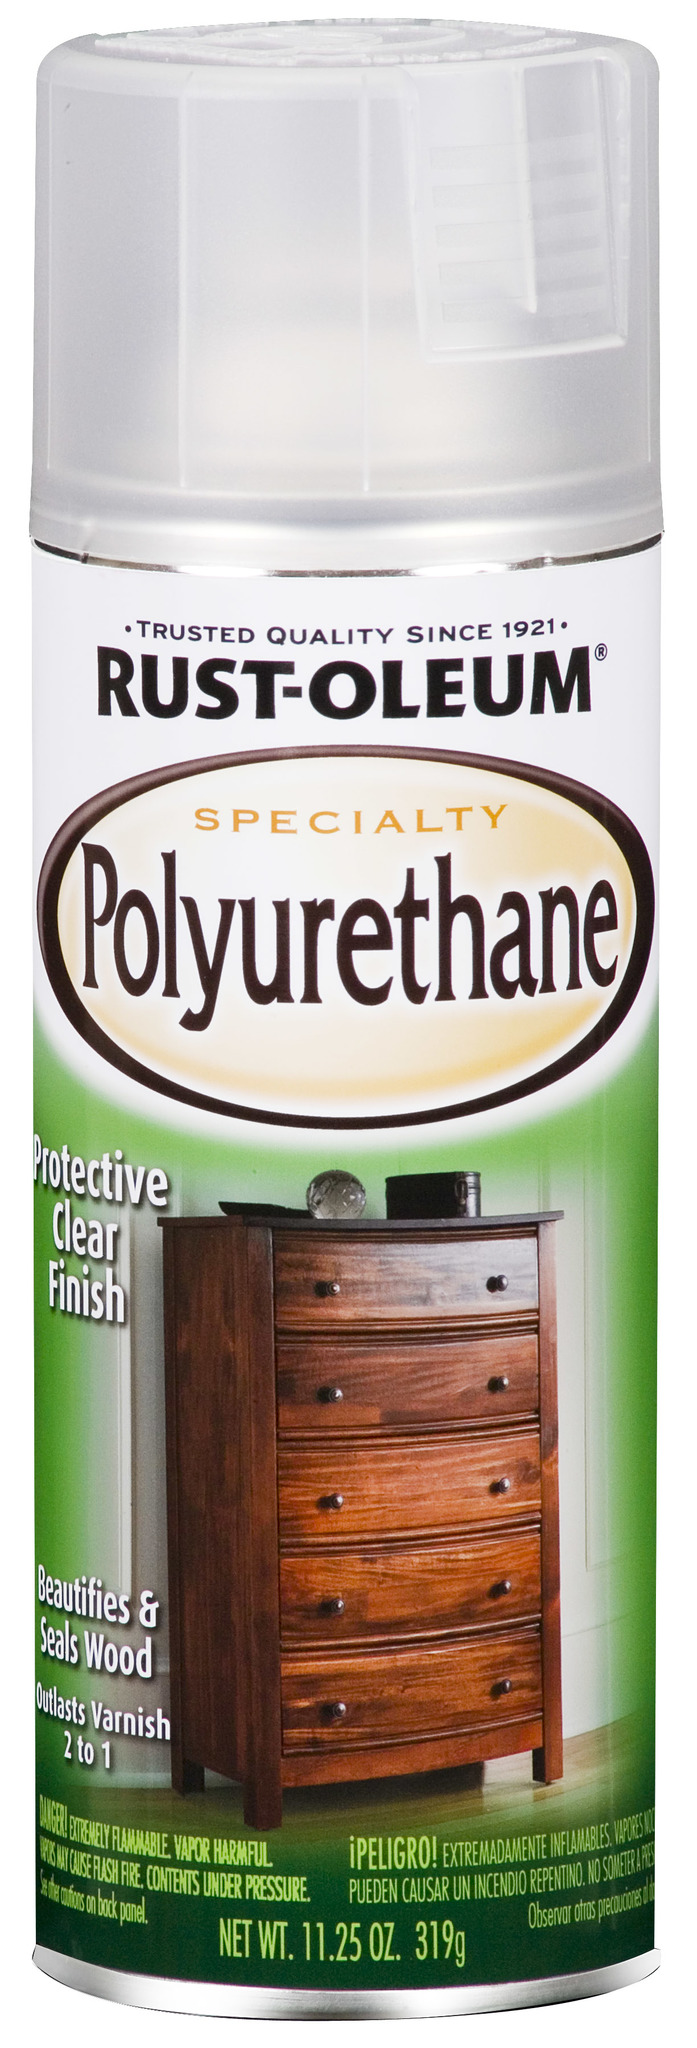 Speciality Polyurethane Spray полиуретановое защитное покрытие для .